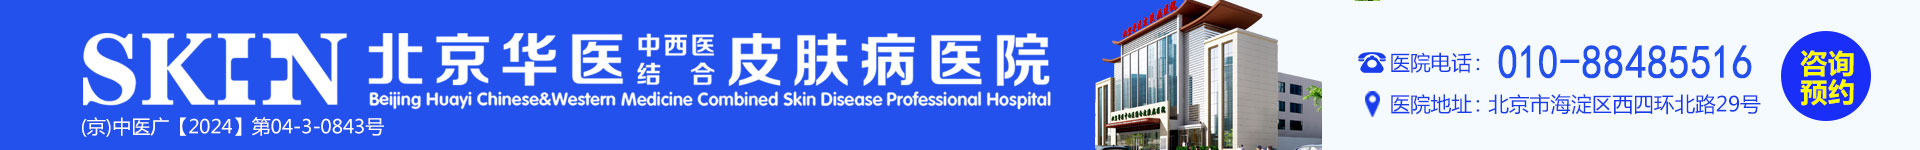 北京皮肤病专科医院